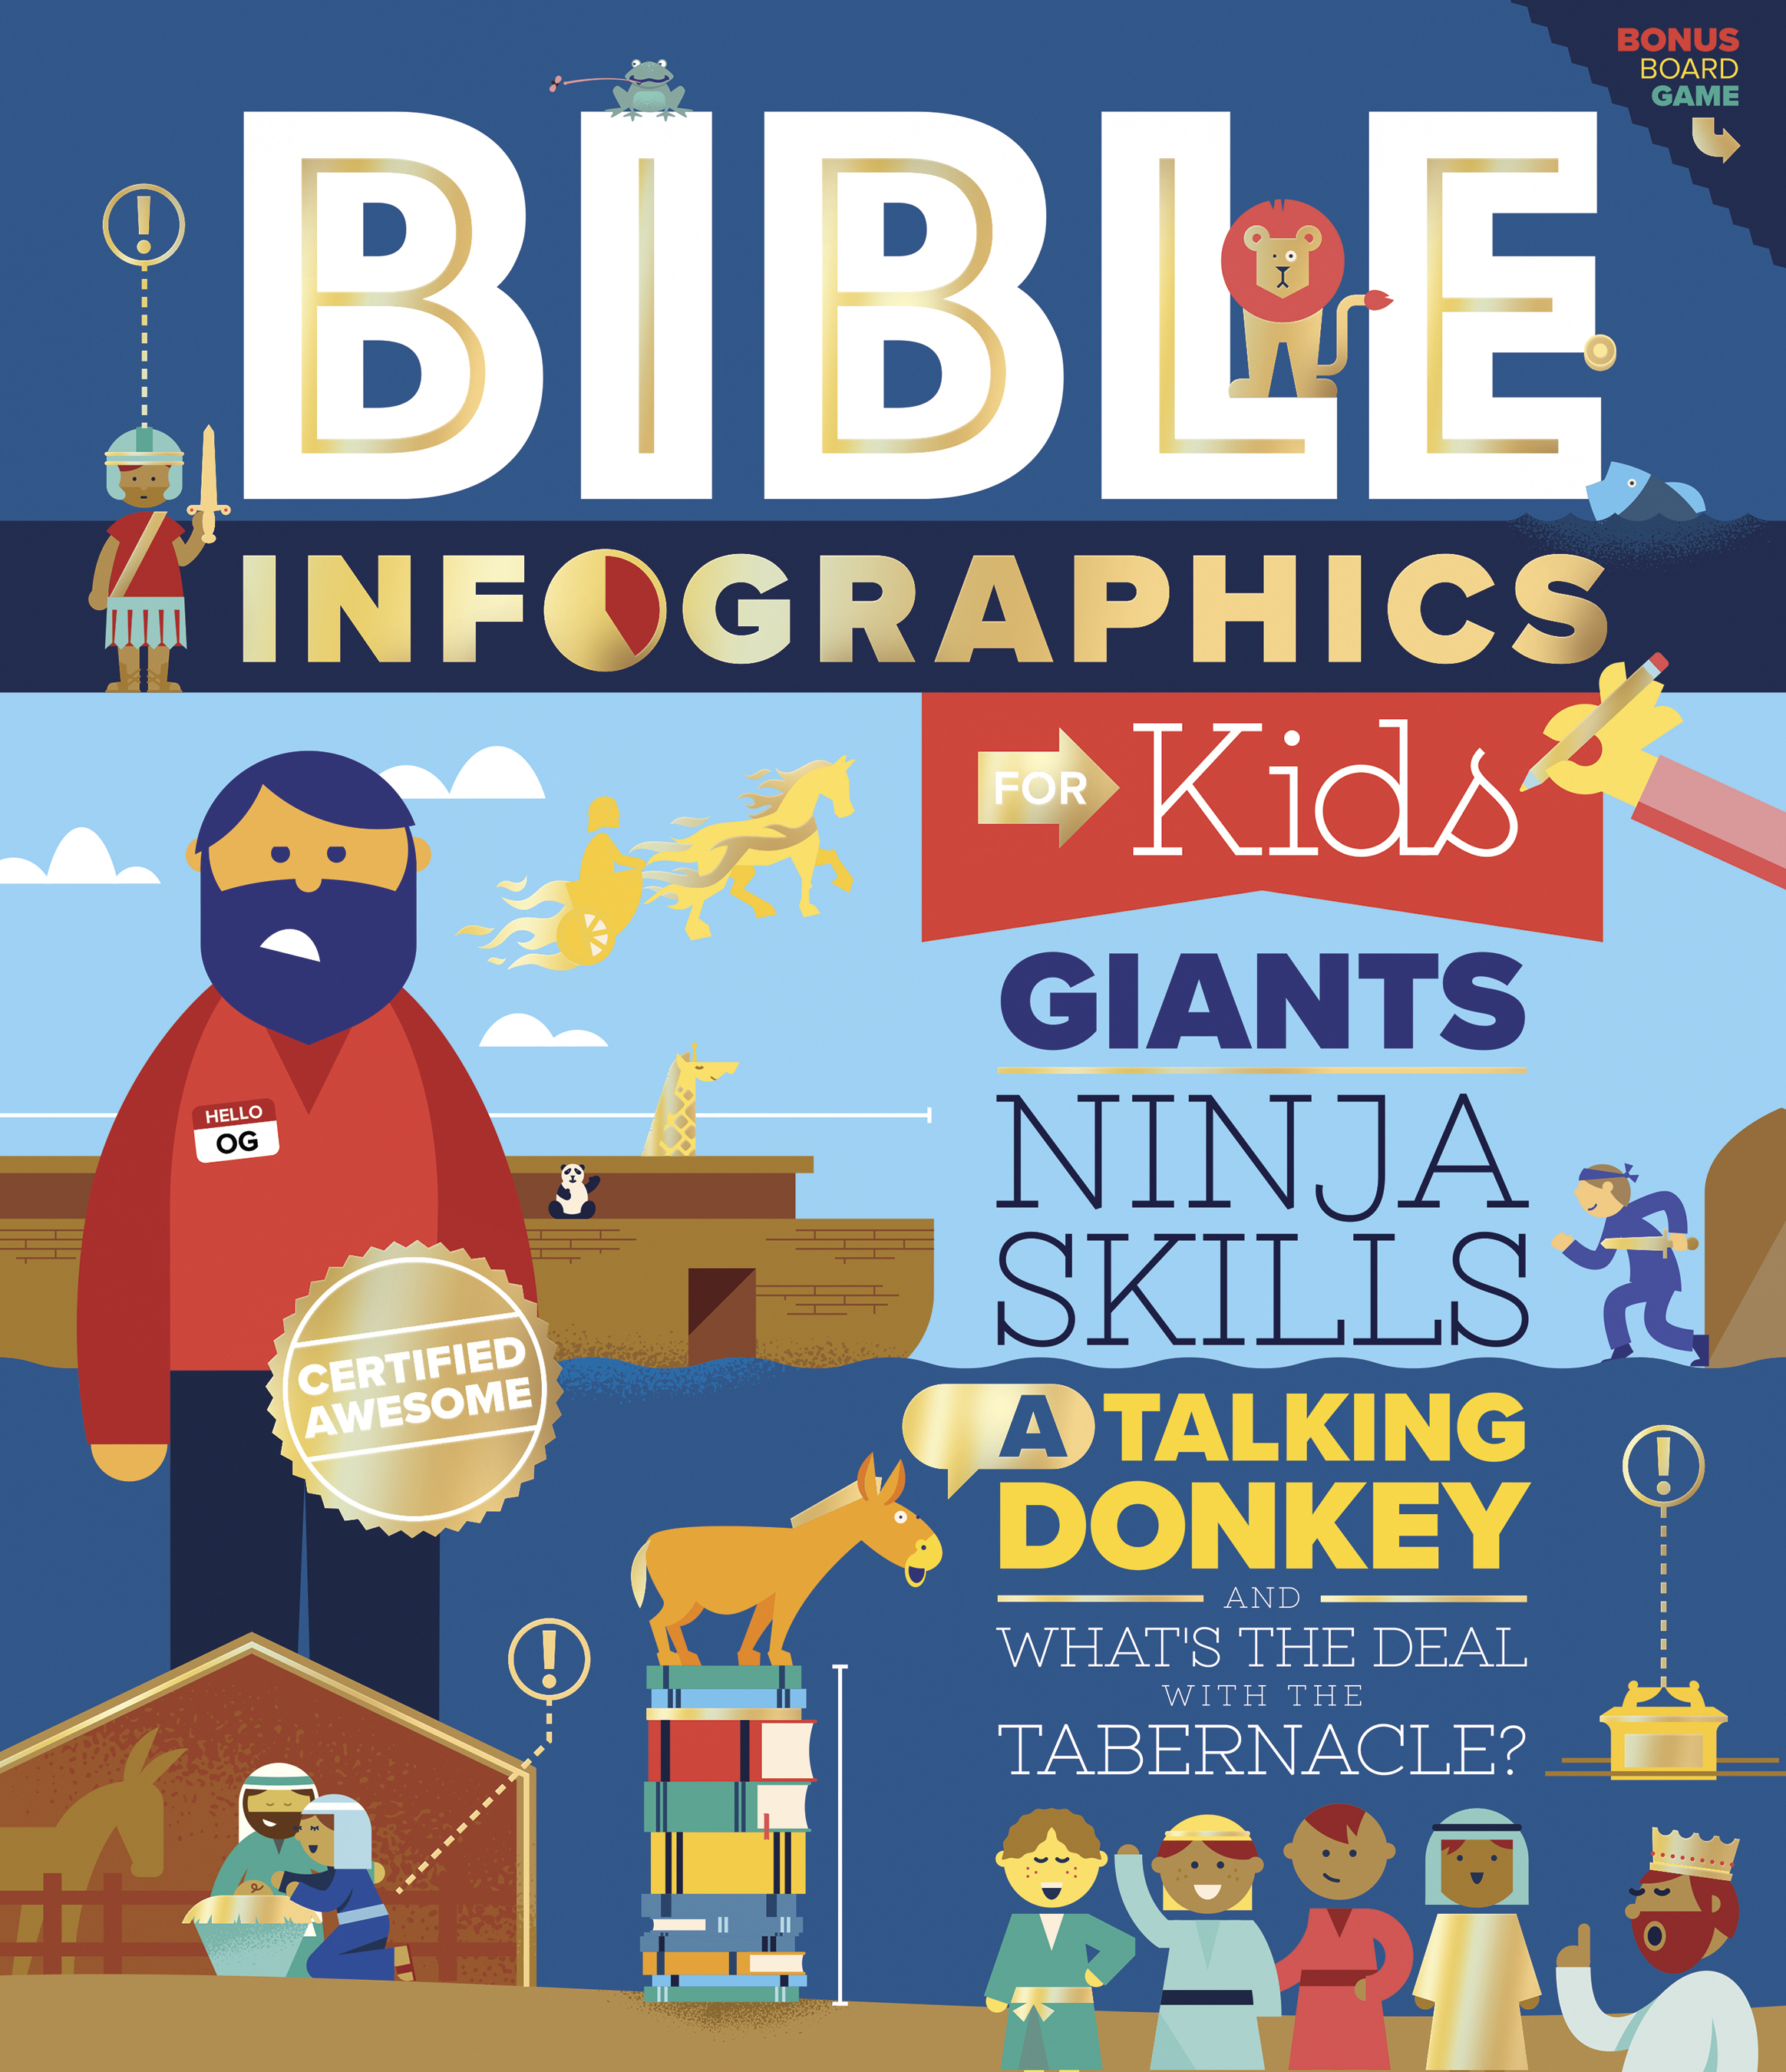 Bible Infographics for Kids.jpg